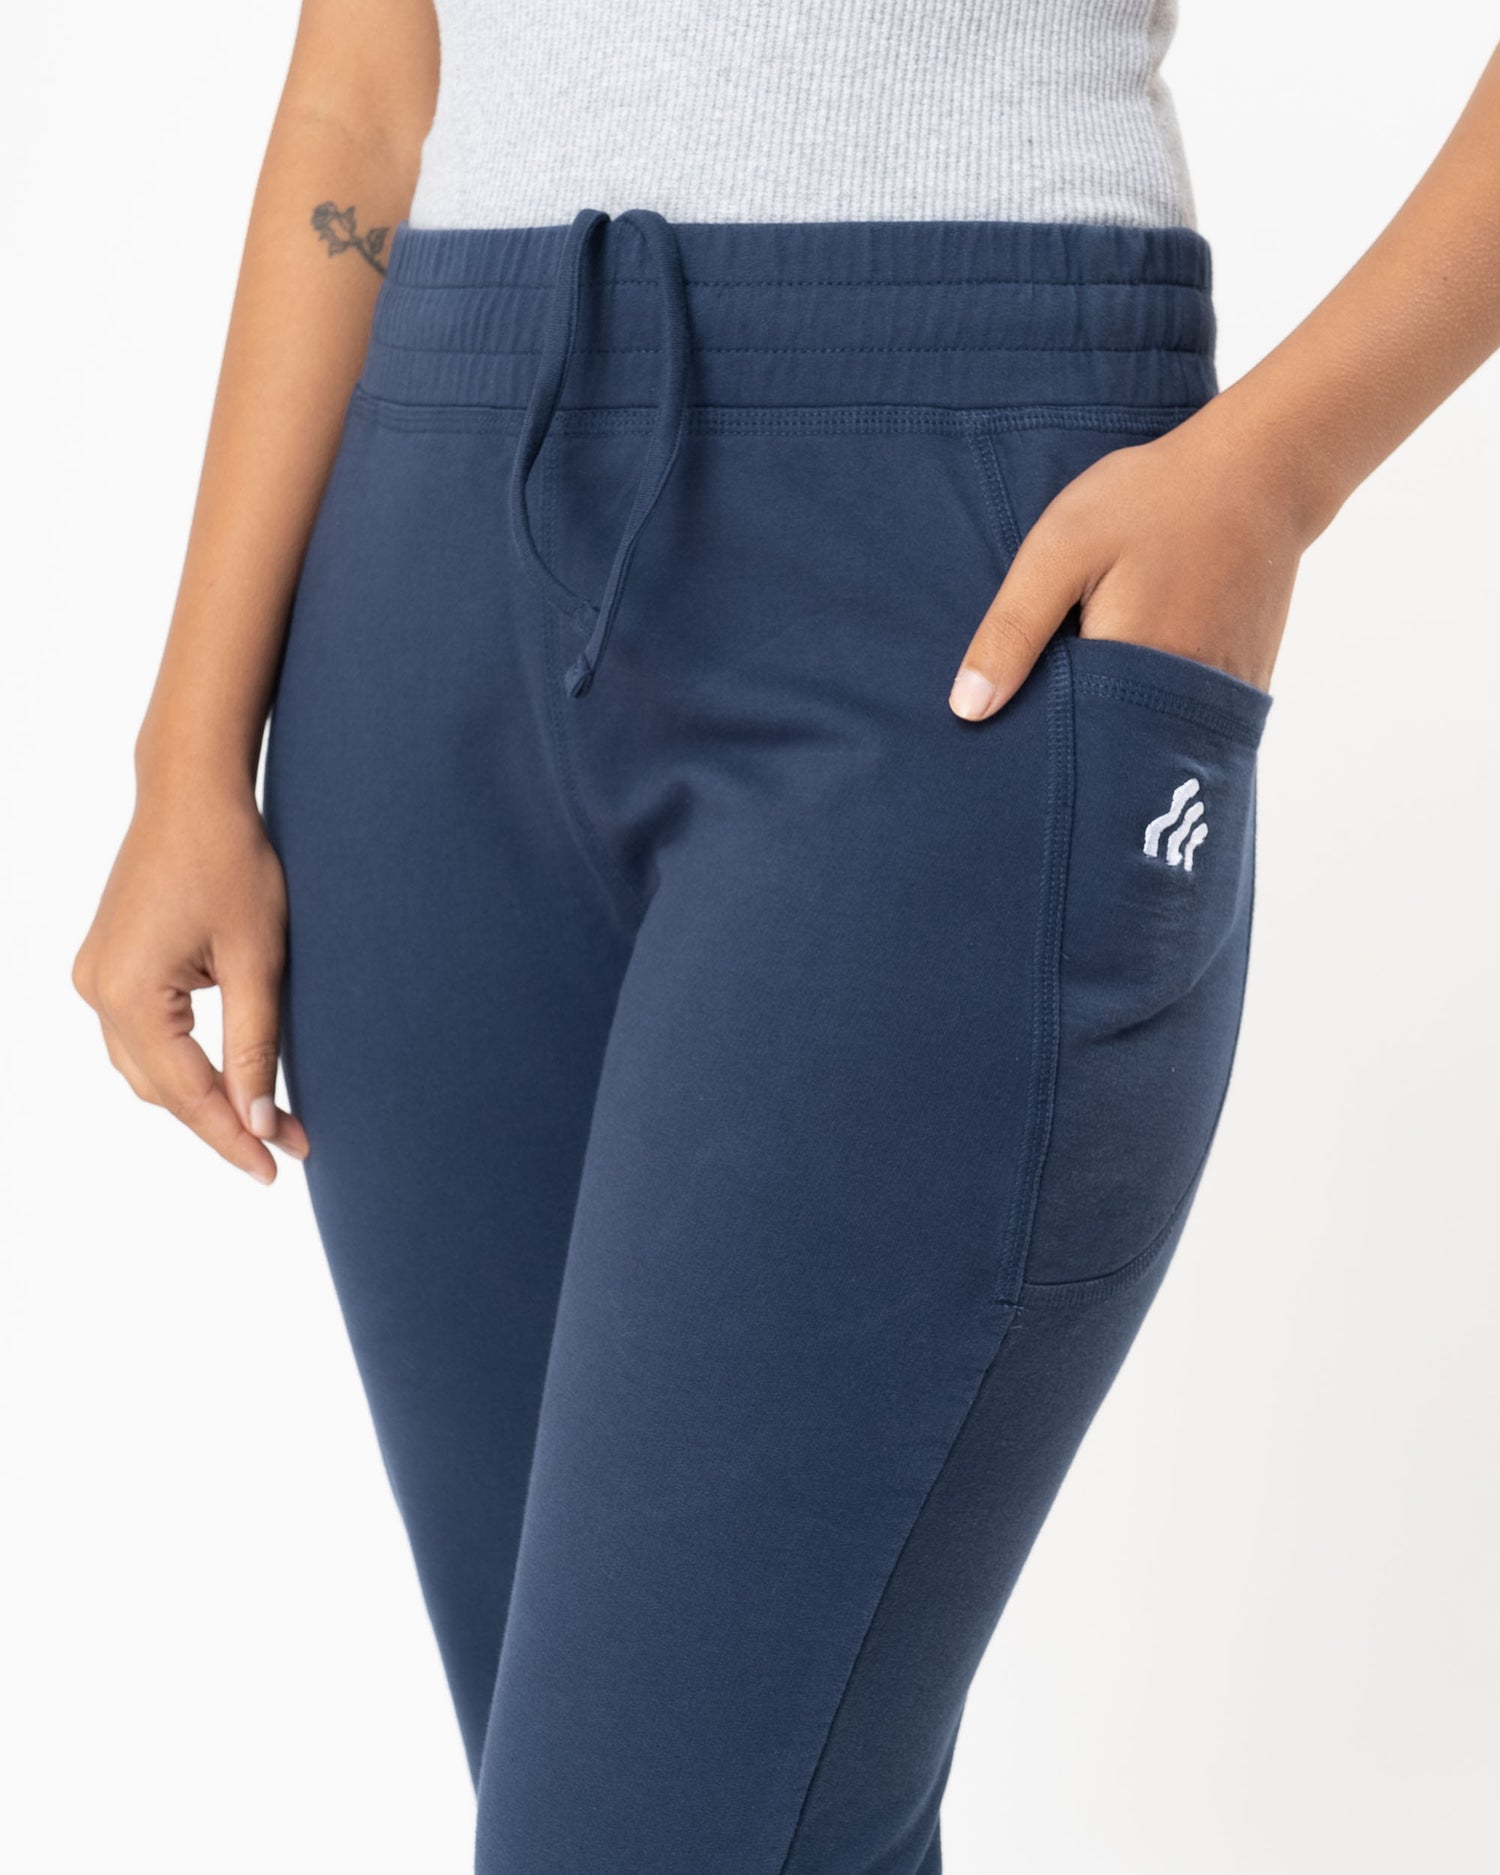 Flex Waist Trouser in Performance Cotton | Women's Pants | Argent